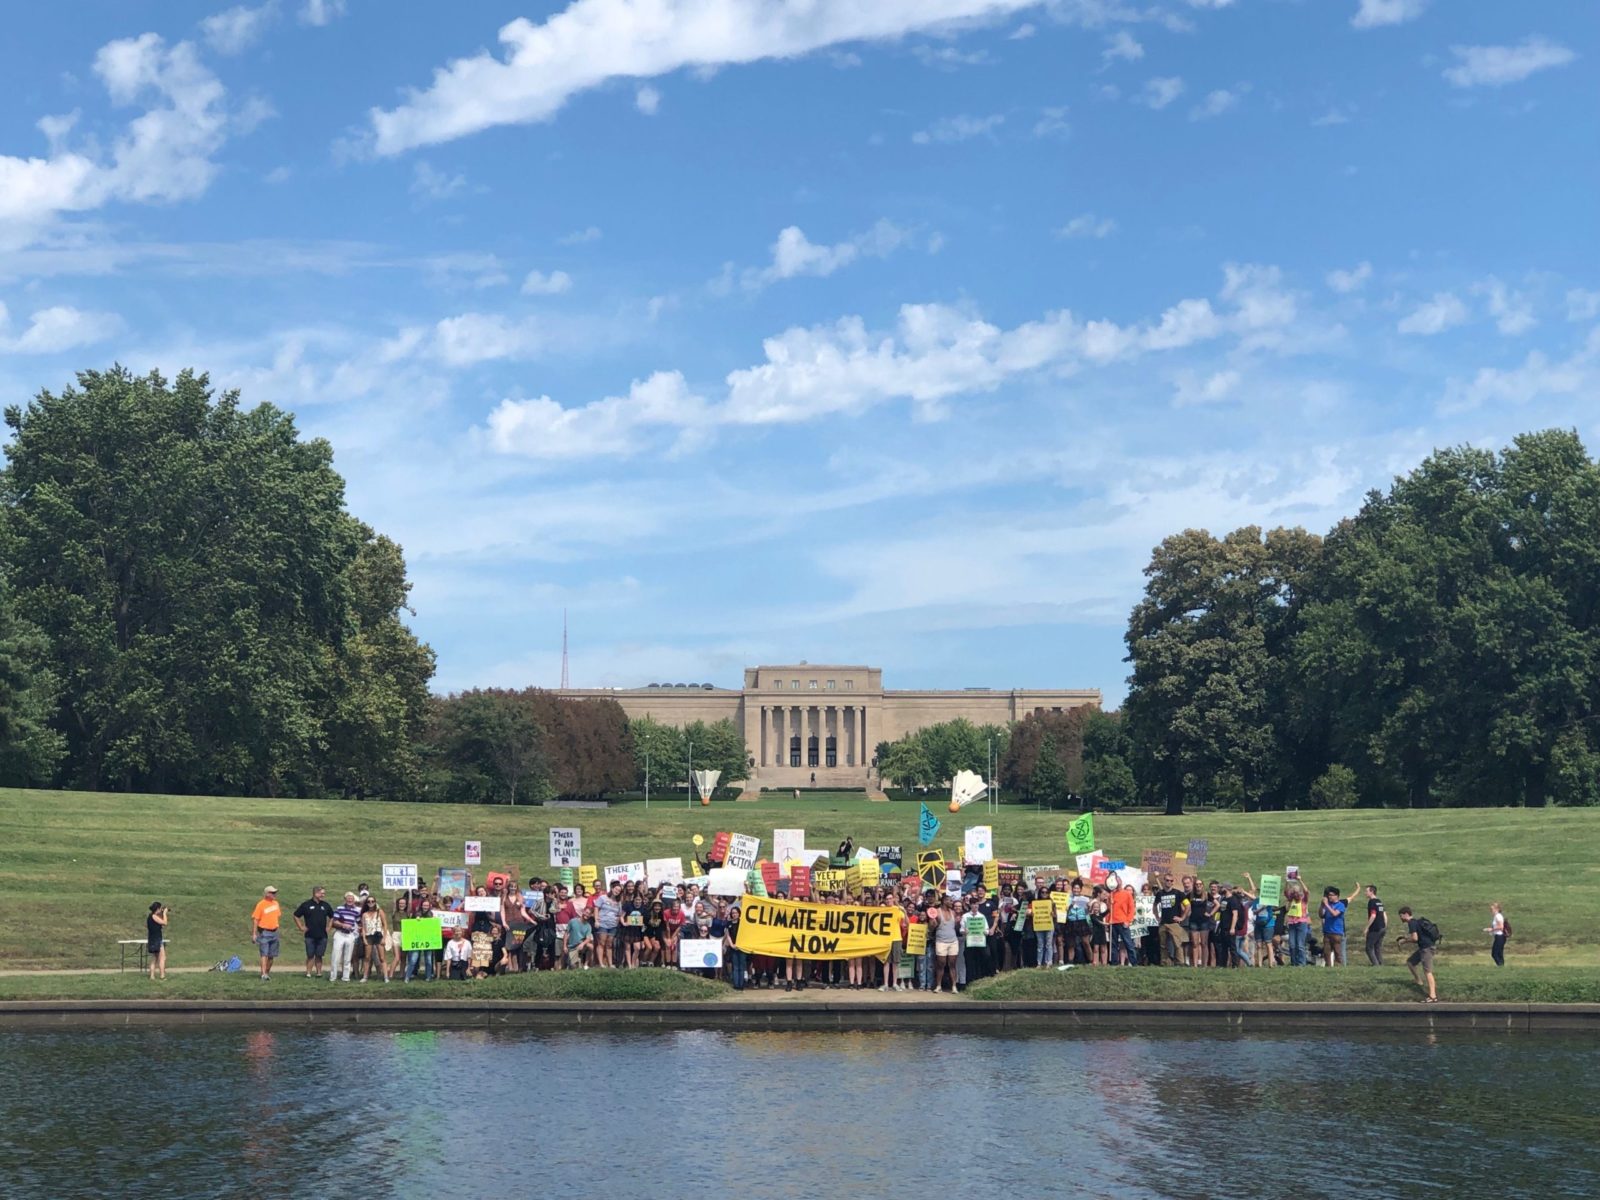 تجمع من الناس خلال إضراب المناخ في سبتمبر 2019 في مدينة كانساس سيتي.